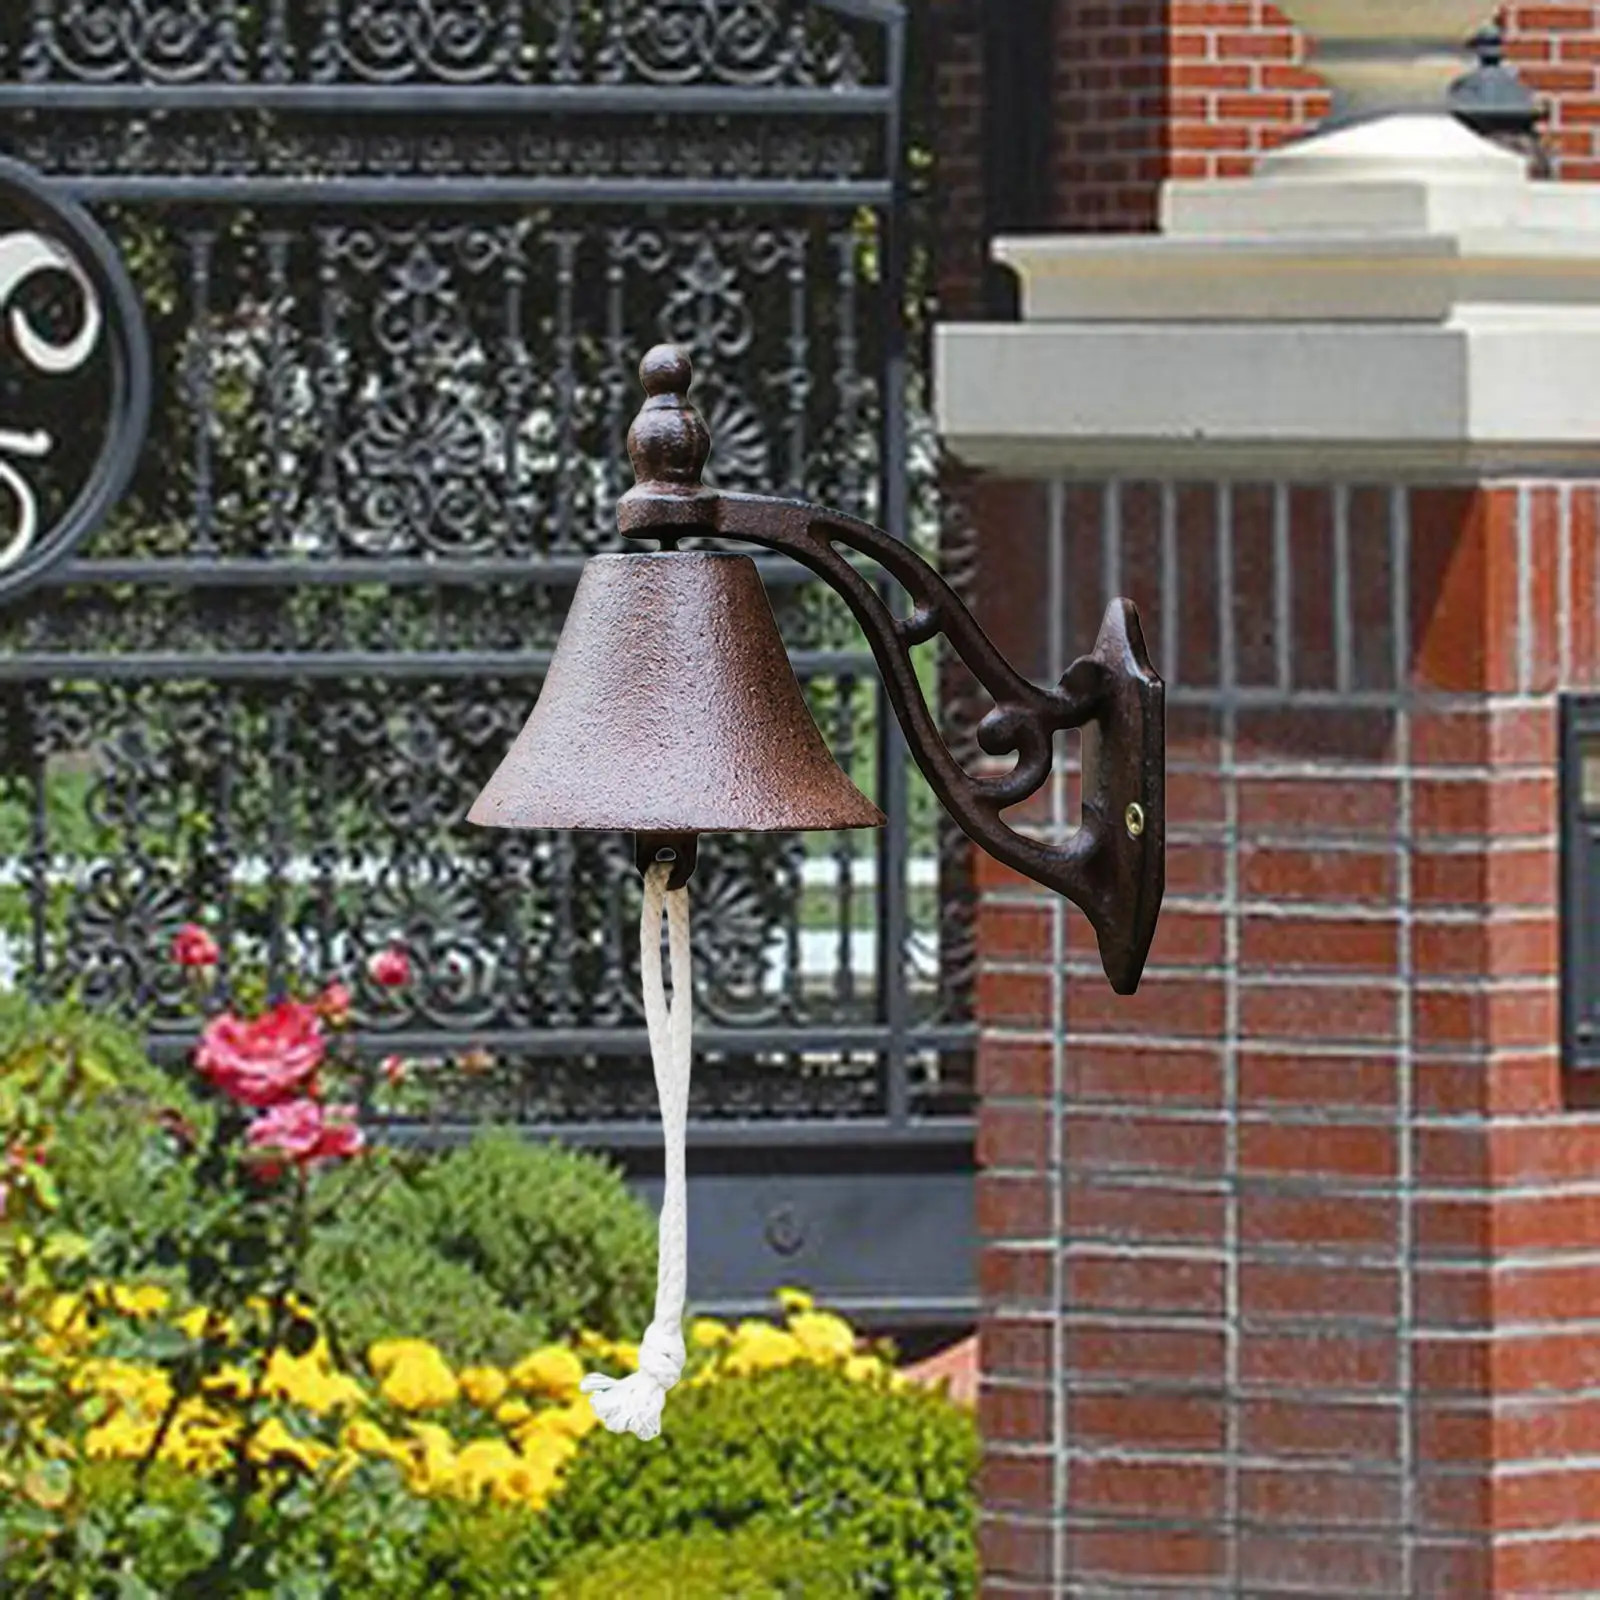 Porch Dinner Bell Door Bells Decorative Garden Bells Antique Type Cast Iron Bell Wall Mounted Dinner Bells for Lawn Farmhouse